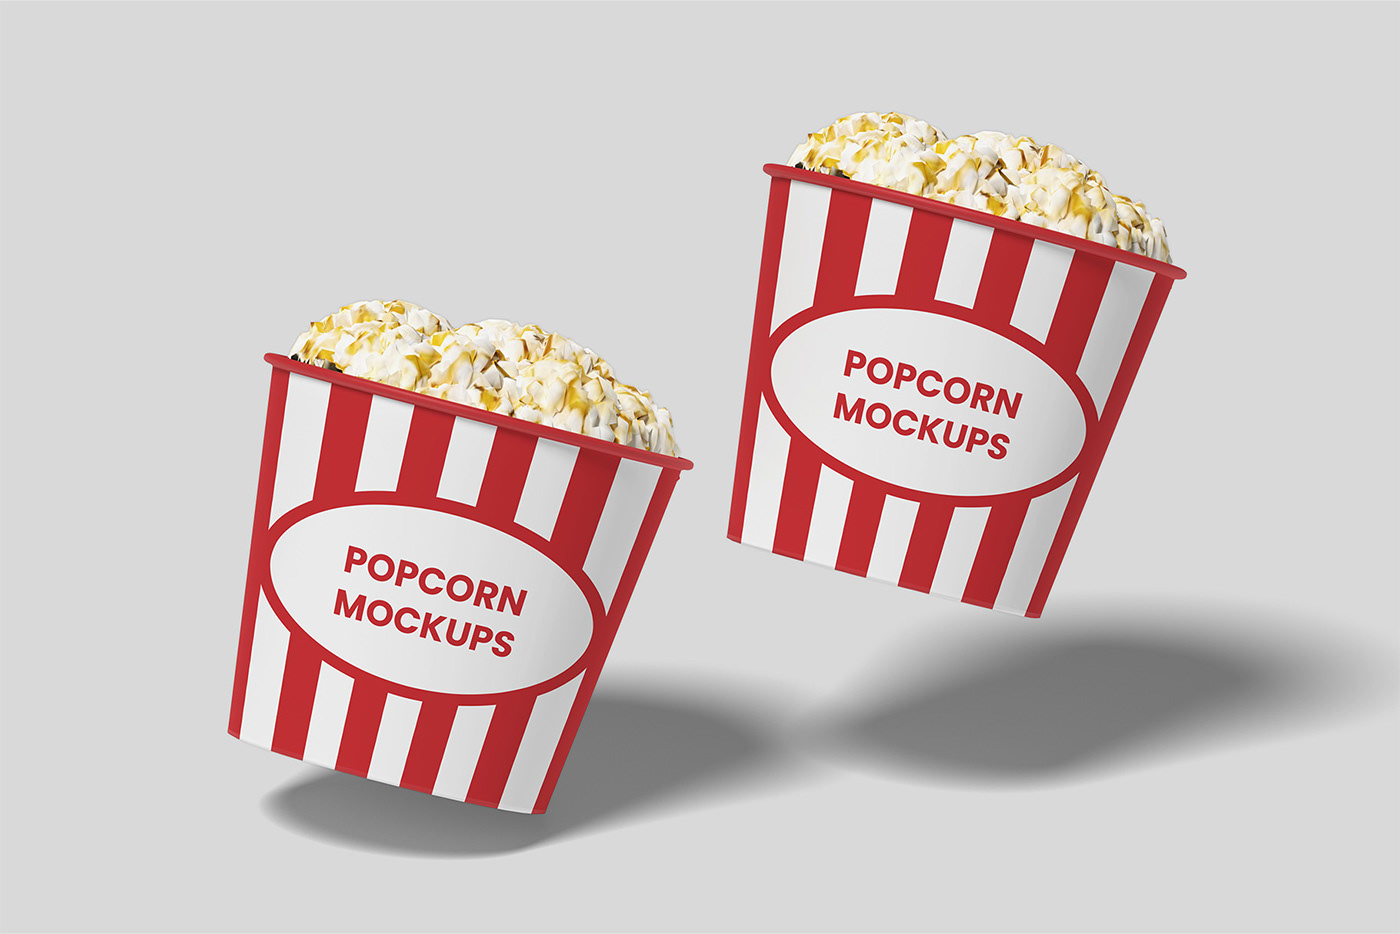 Mockup mockup design mockup psd mockup free popcorn Pop corn Packaging packaging design package design  snack